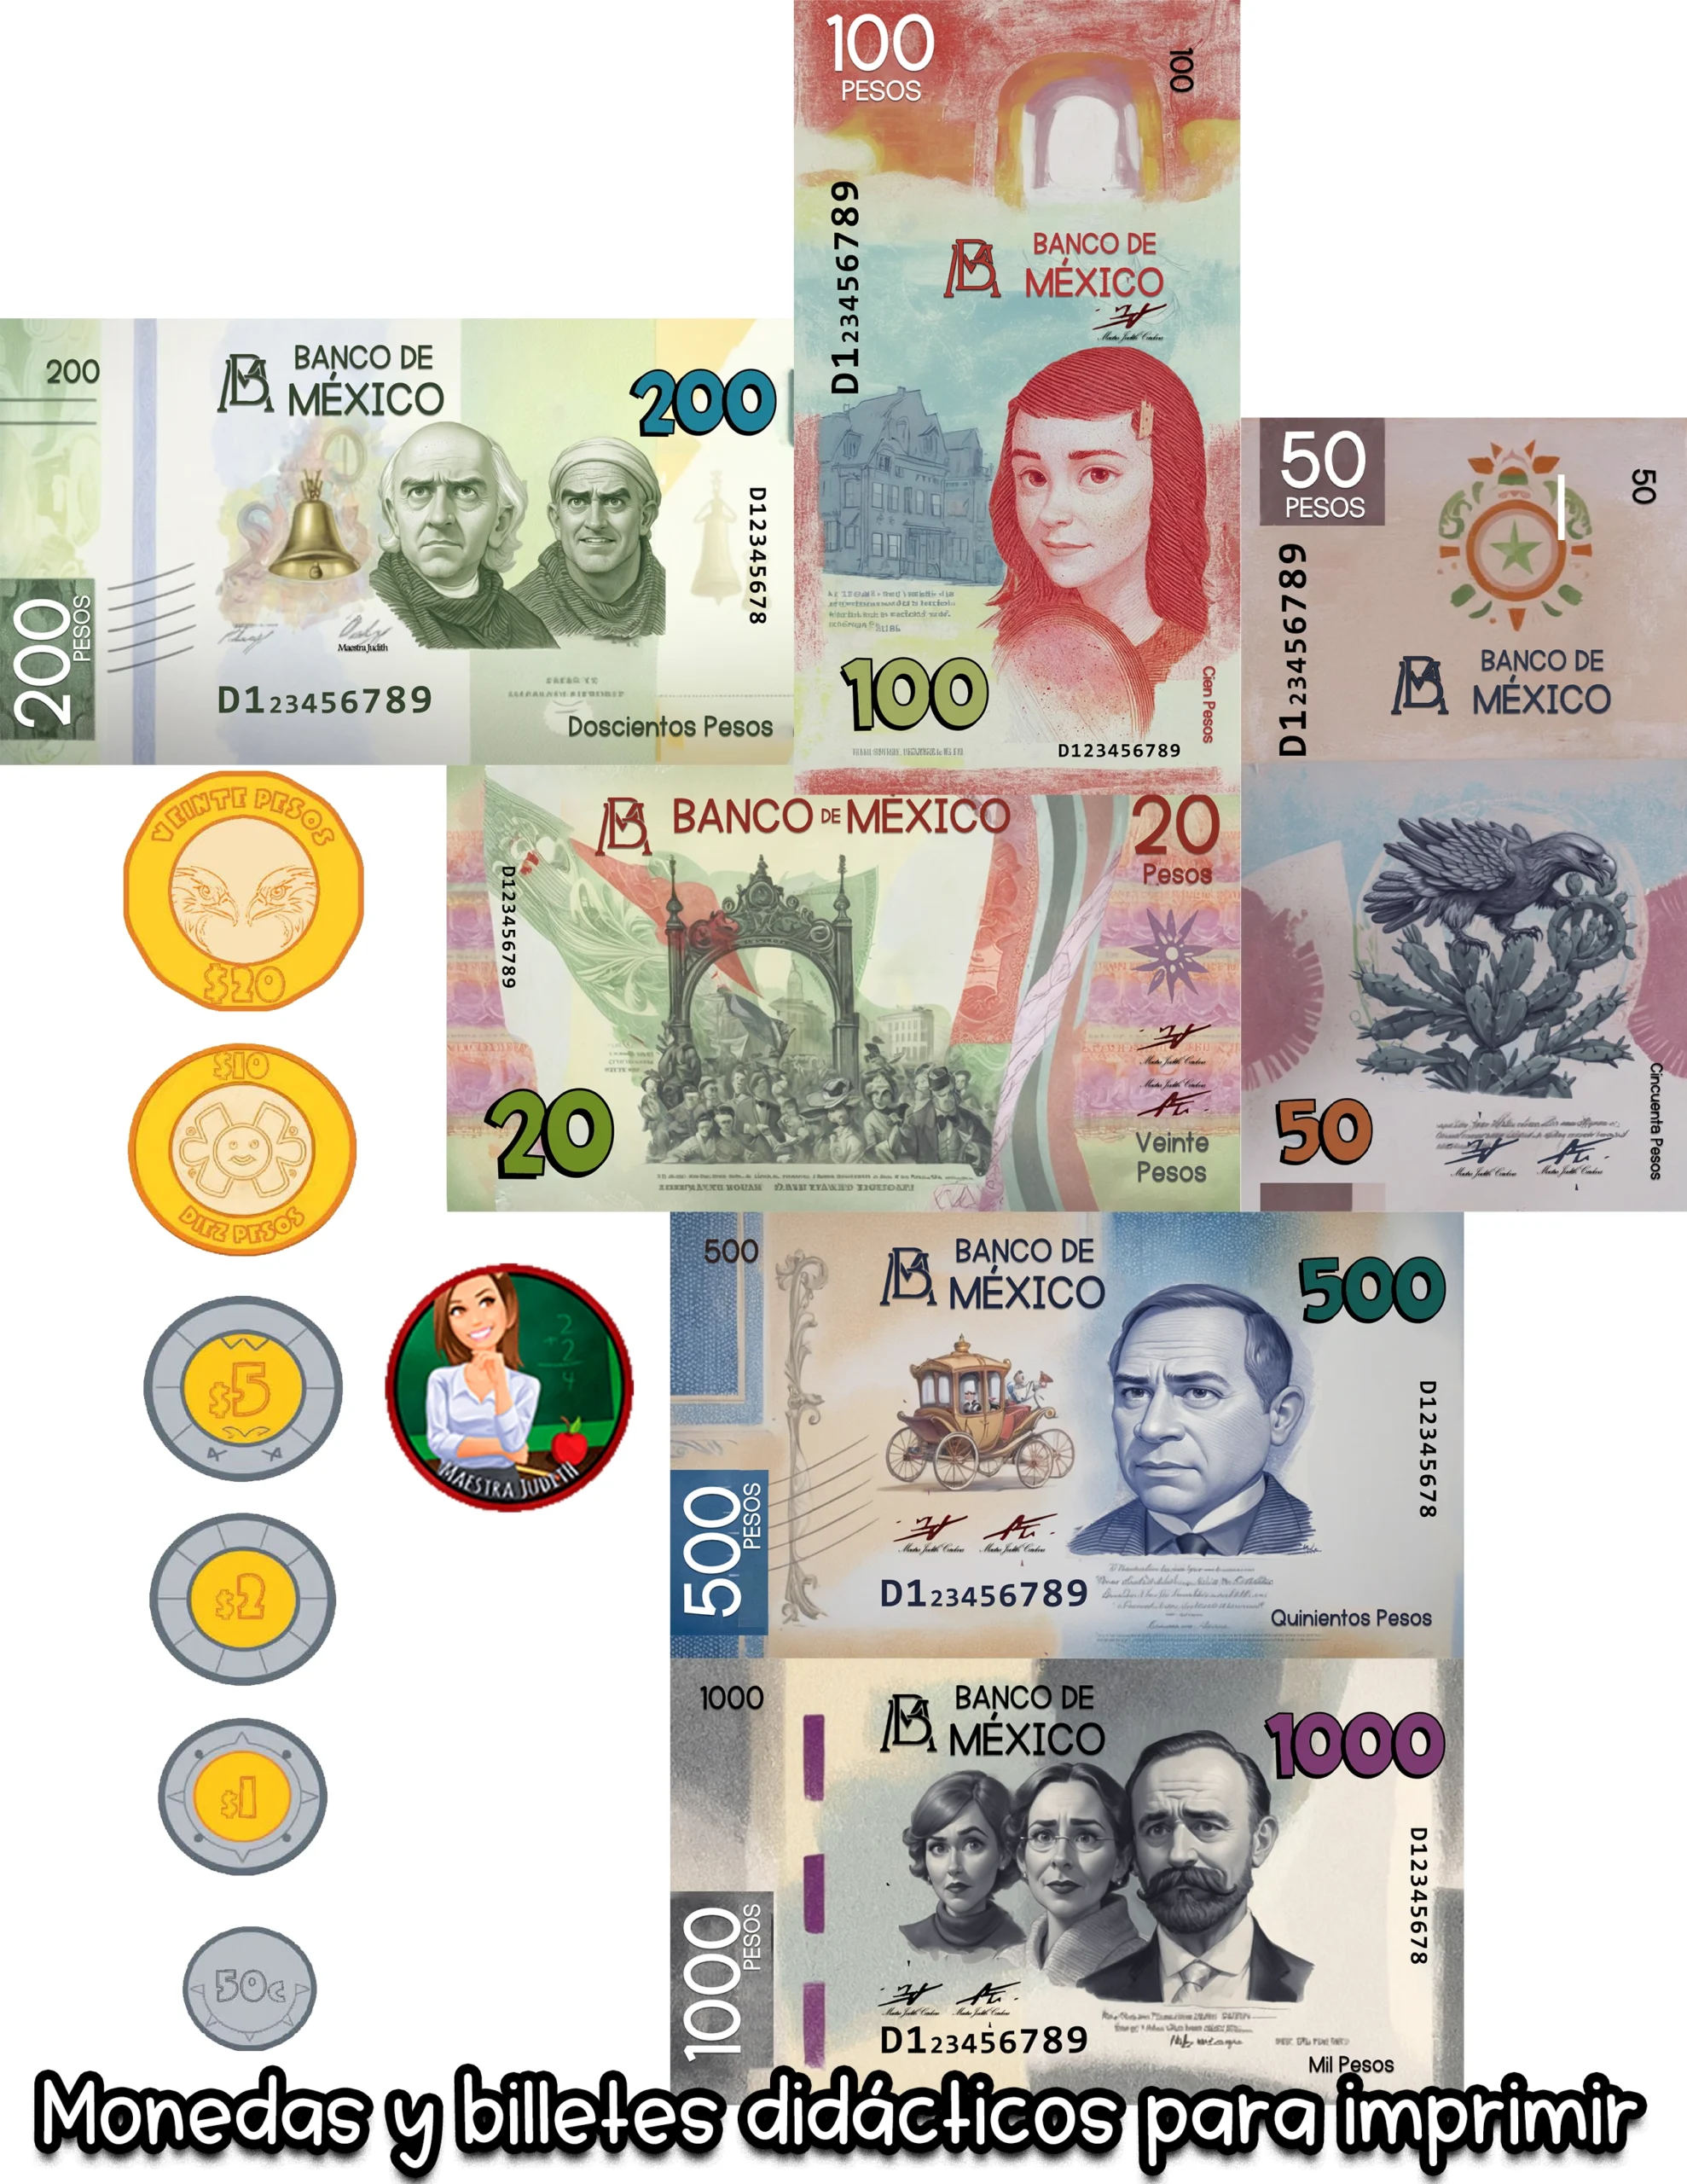 Monedas y billetes didácticos para imprimir